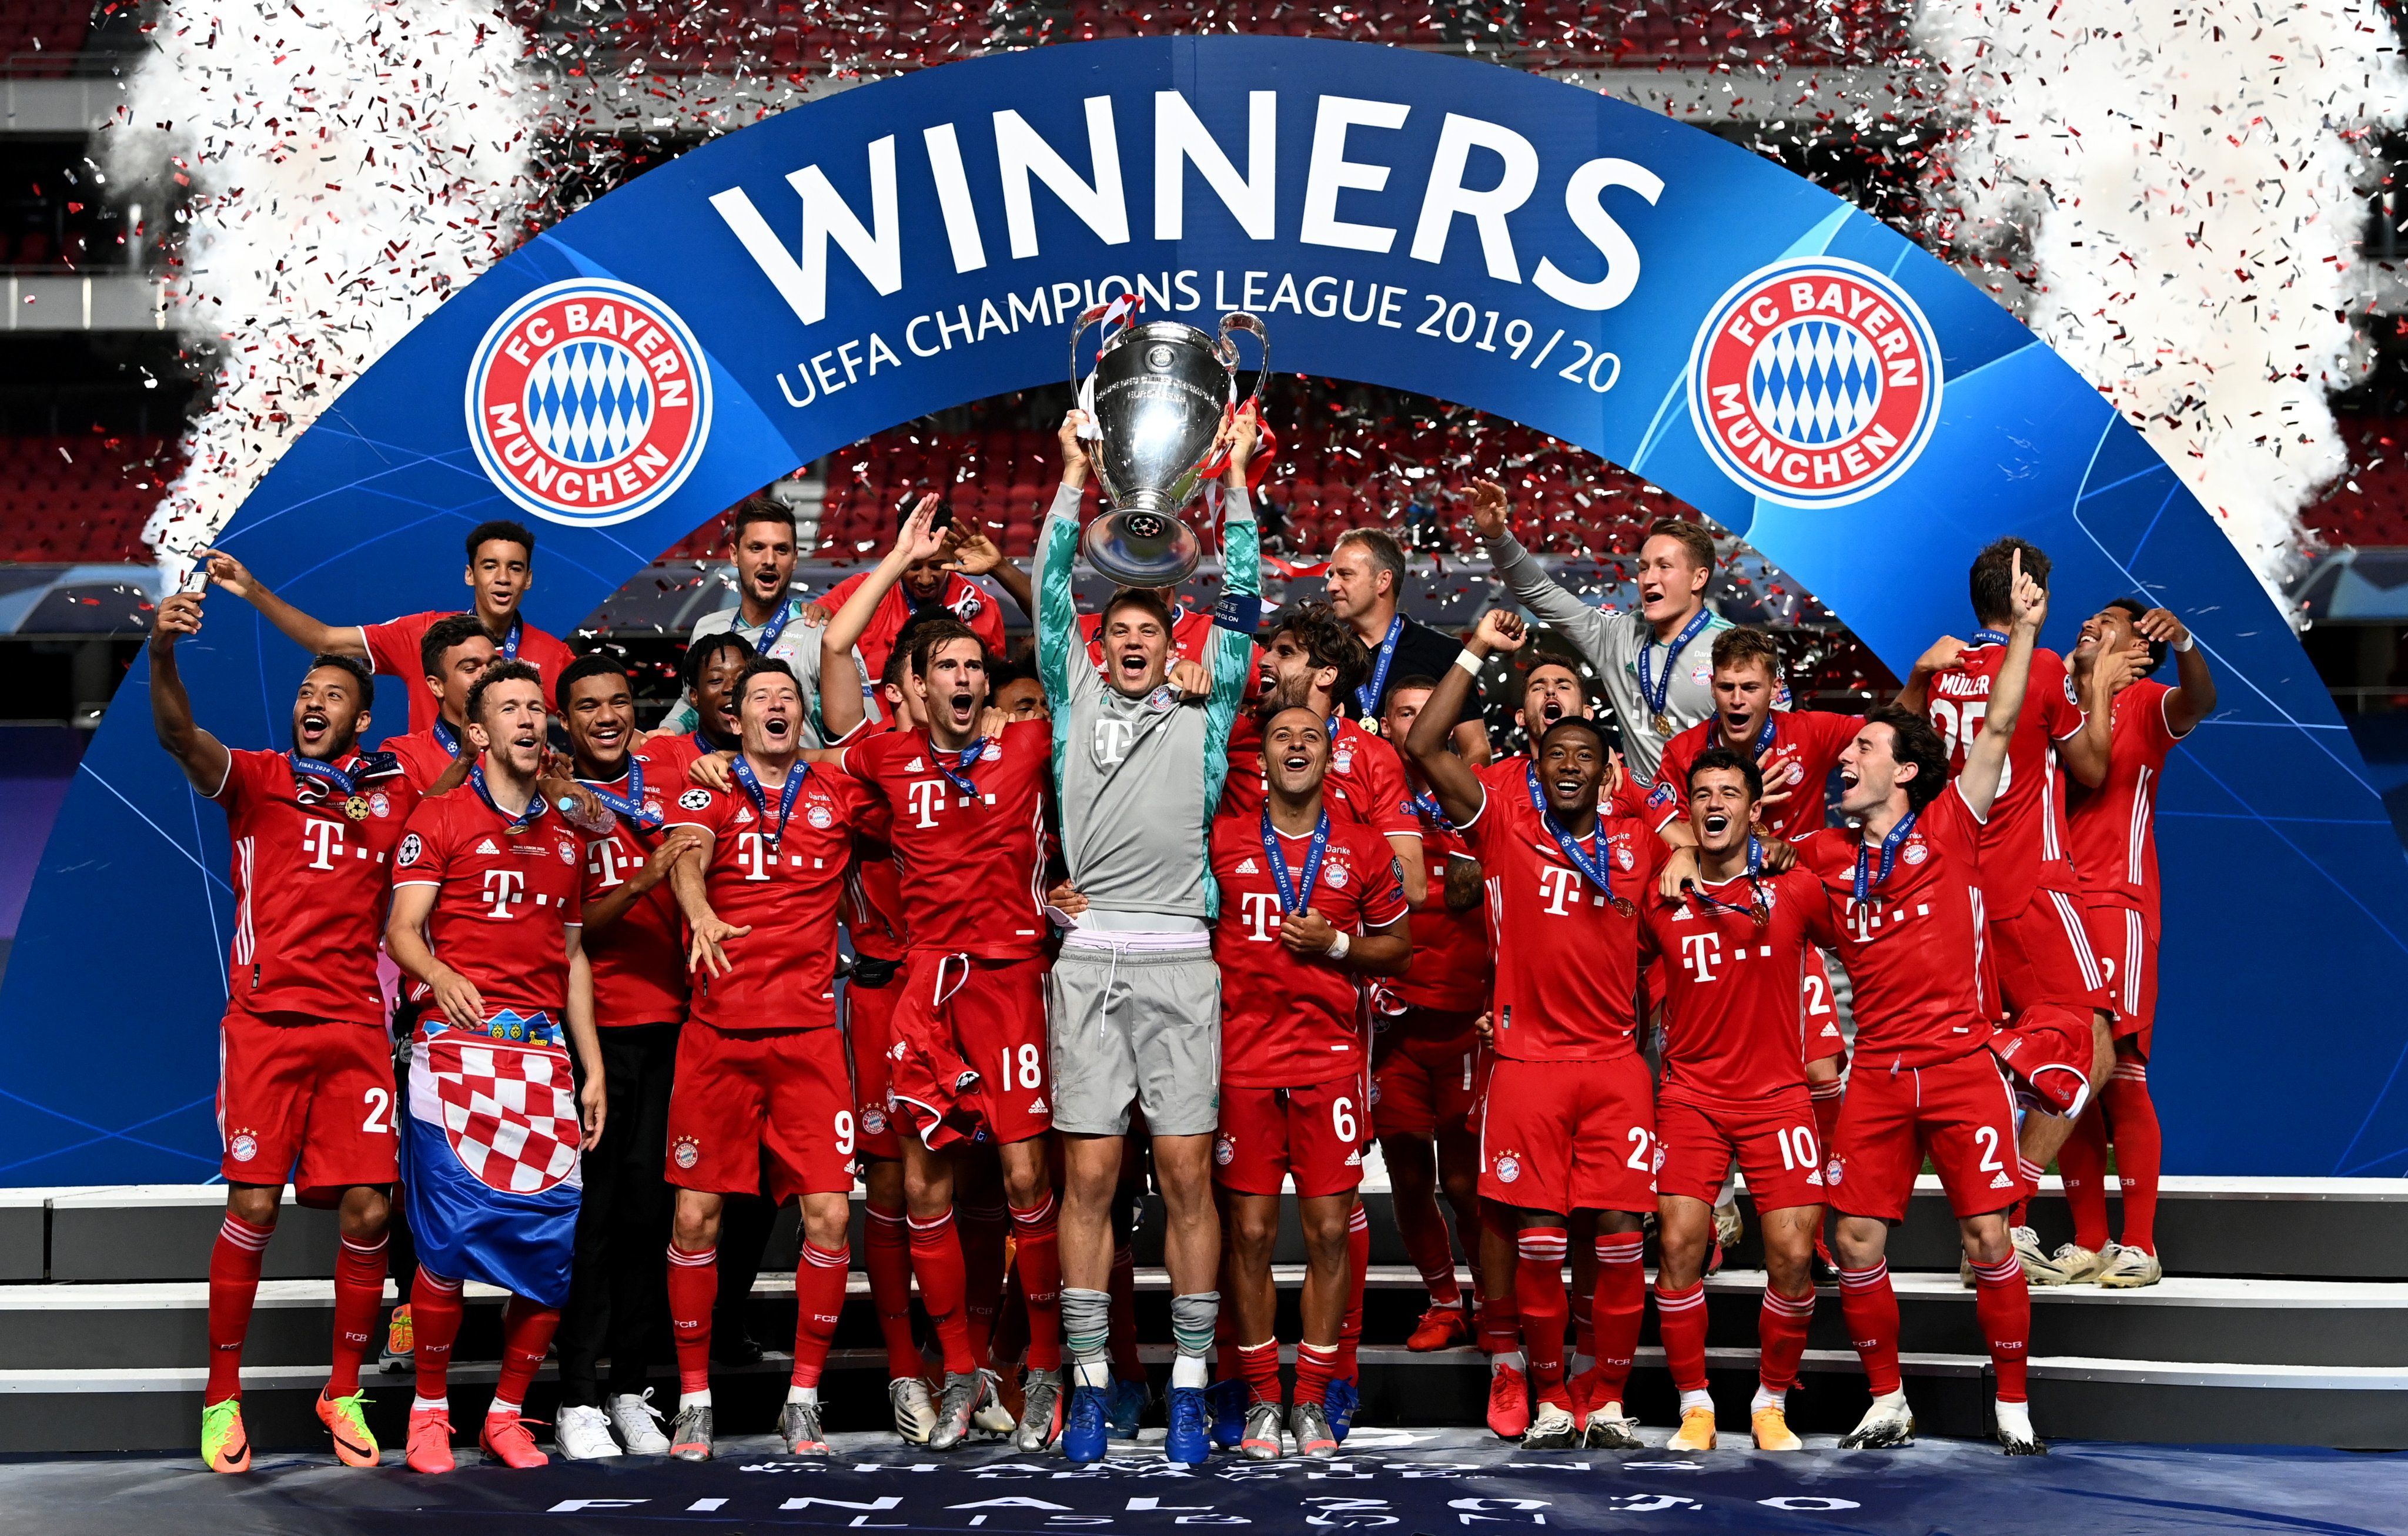 Сколько лч у баварии. Бавария победитель Лиги чемпионов 2013. Бавария финал ЛЧ 2020. Бавария победитель Лиги чемпионов 2020. Финал Лиги чемпионов УЕФА 2020.